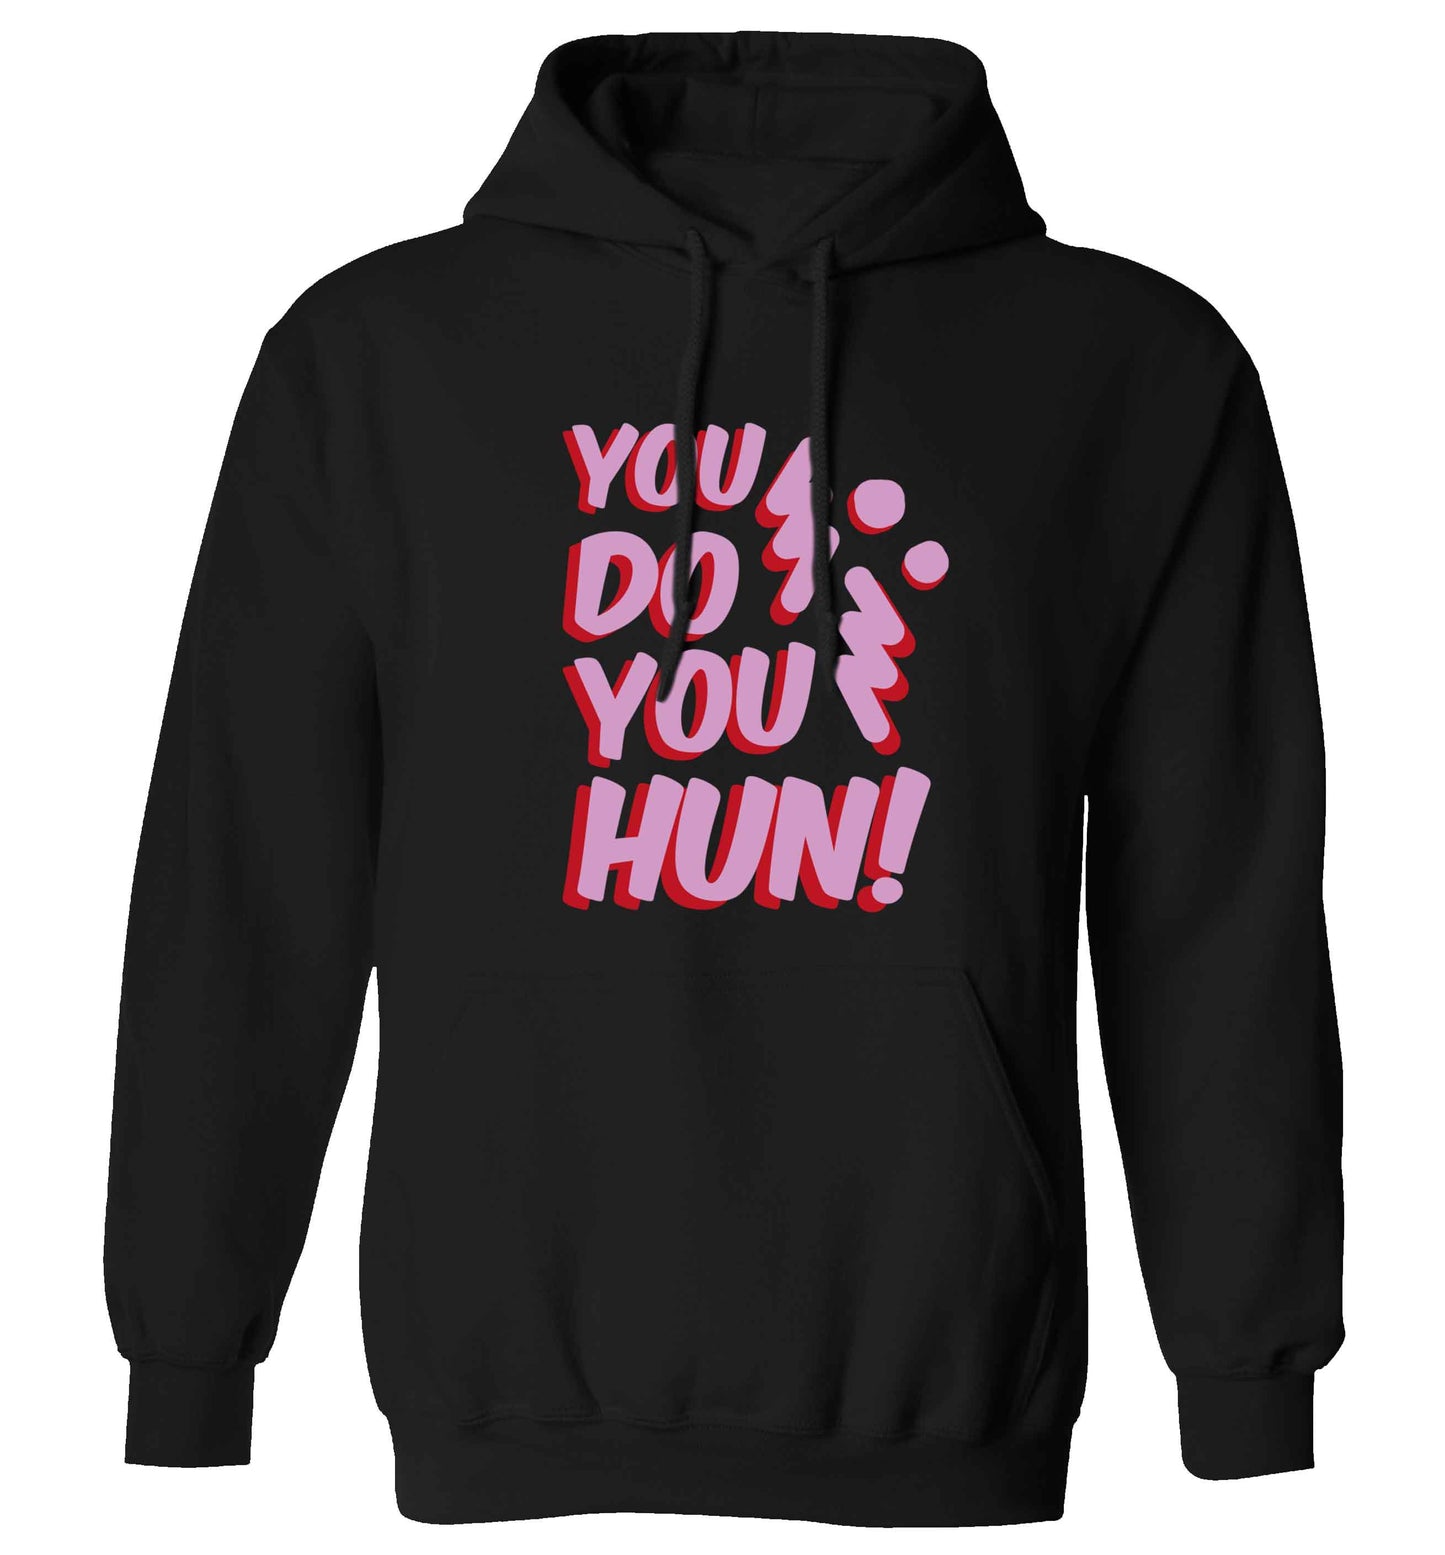 You do you hun adults unisex black hoodie 2XL